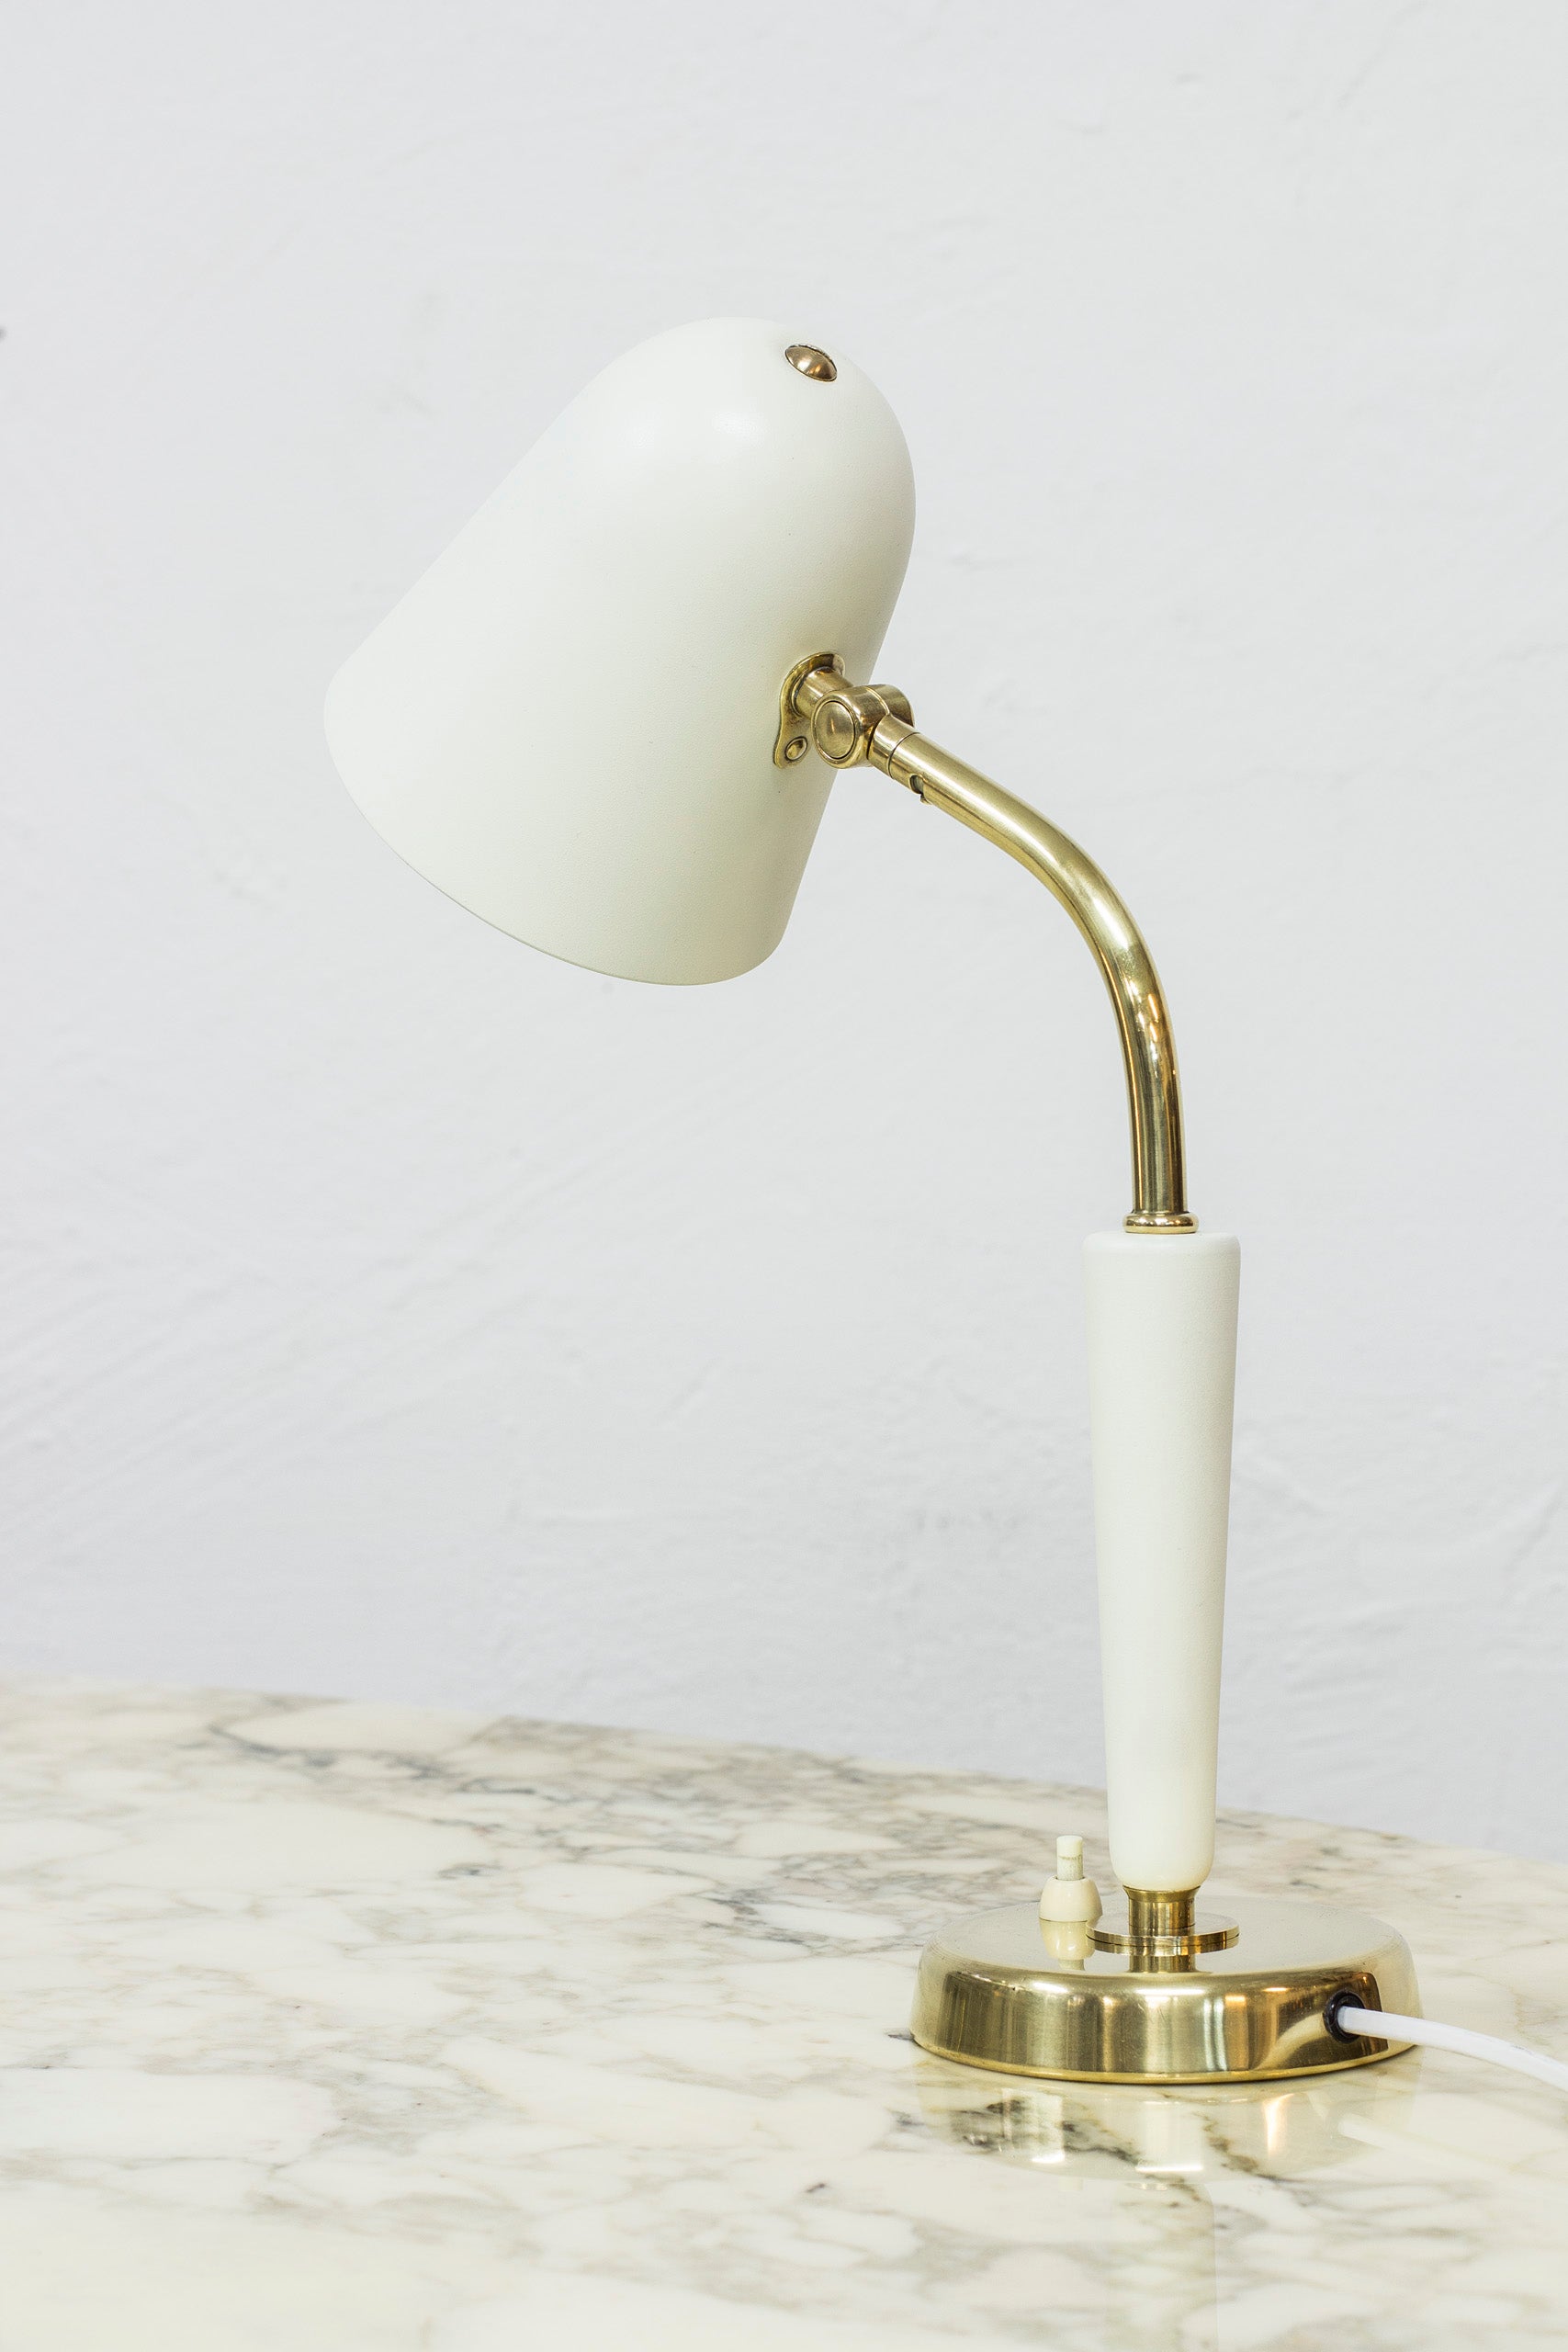 Table lamp by Bertil Brisborg for NK